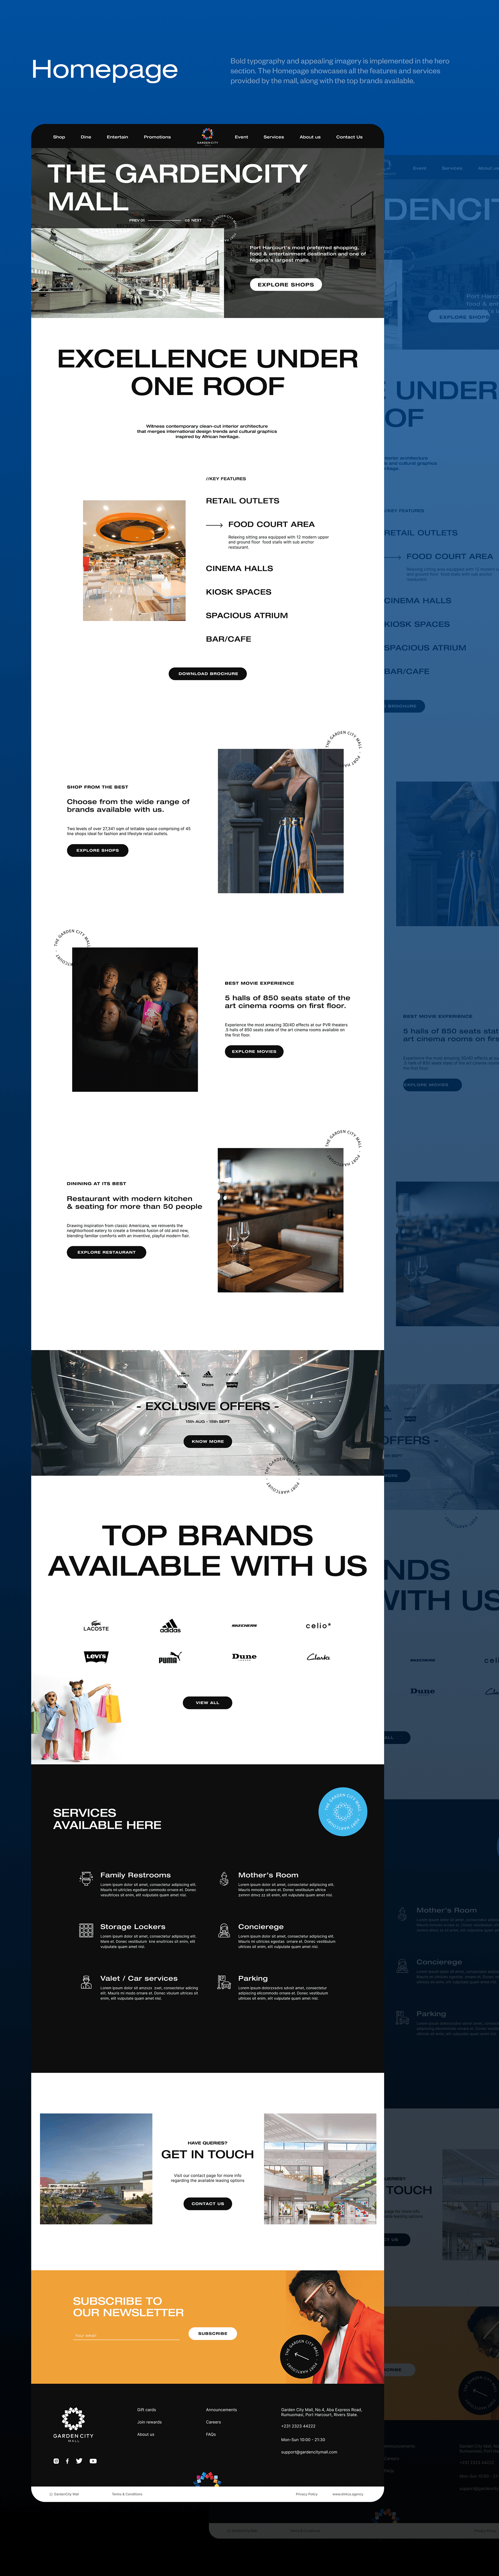 ecommerce website websitedesign bold font UX design ui design